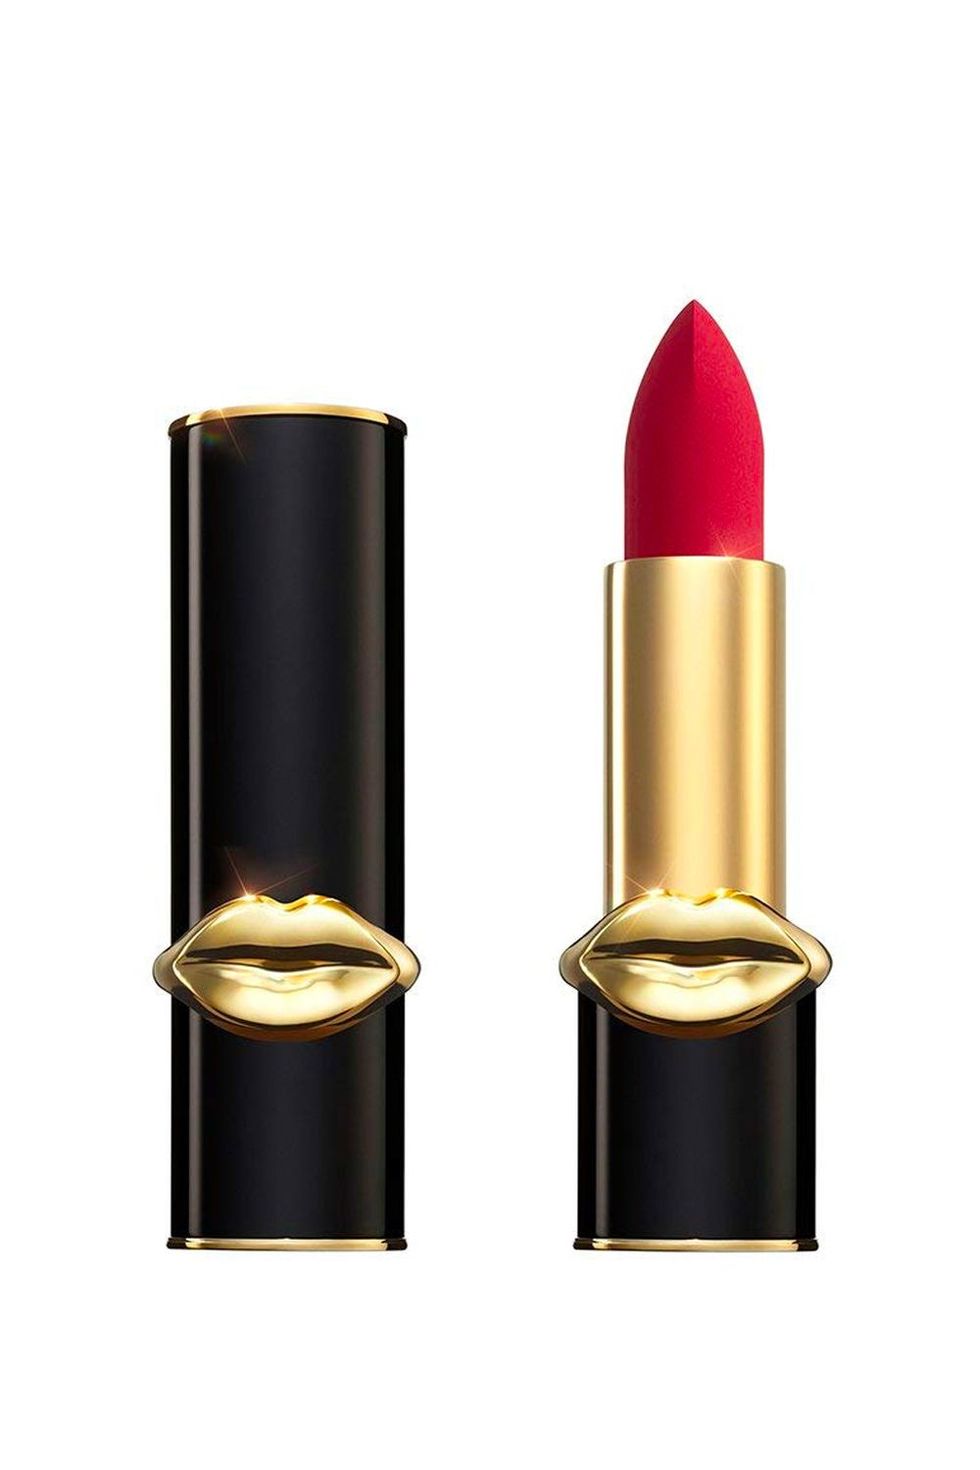 Lipstick - Wikipedia